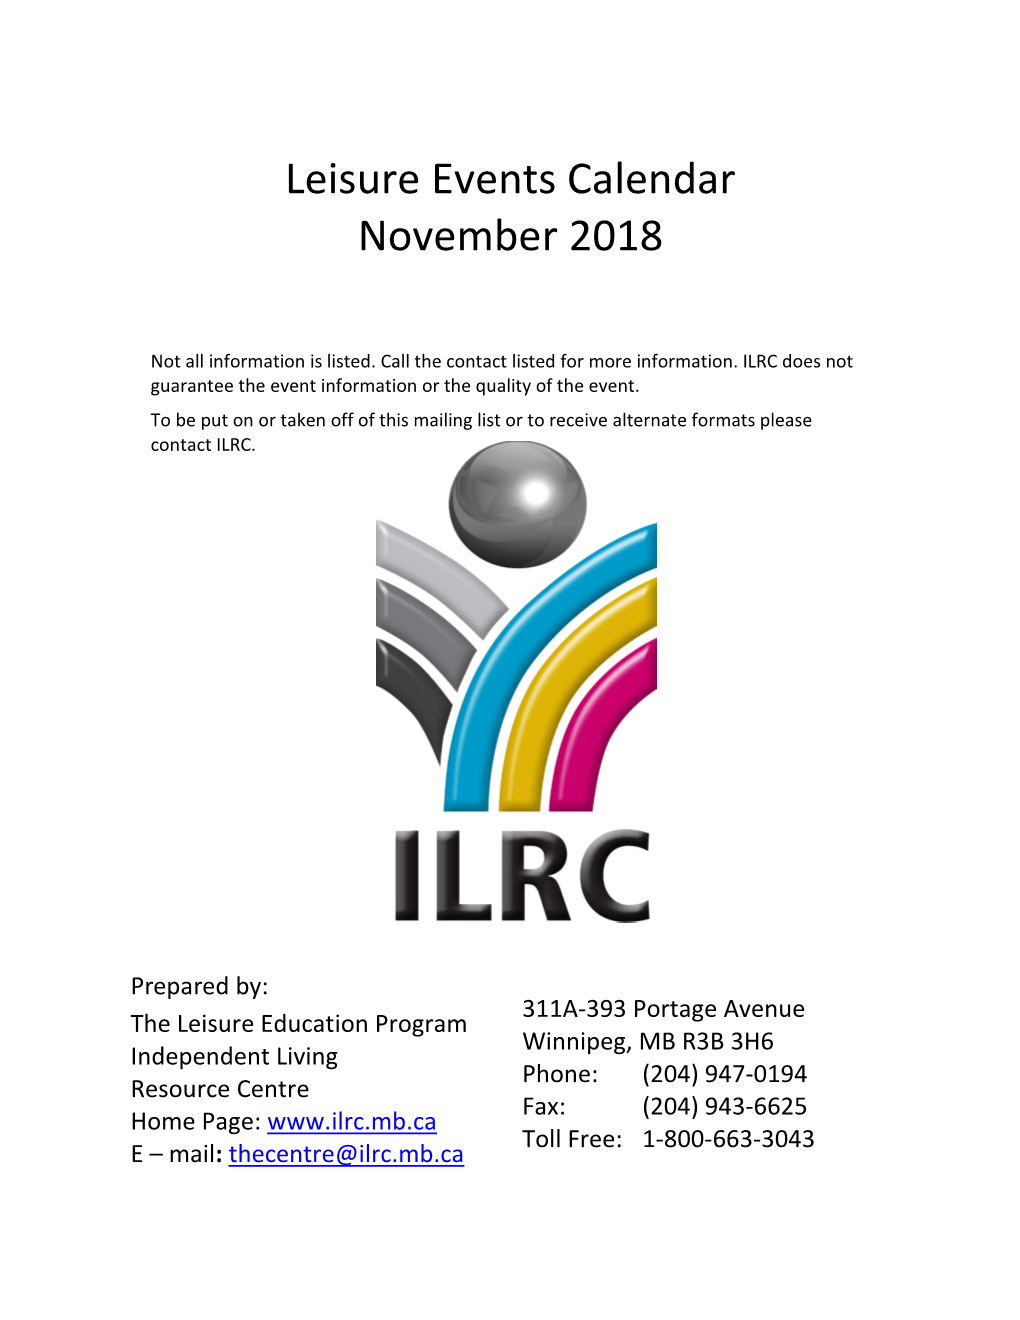 Leisure Events Calendar for November 2018